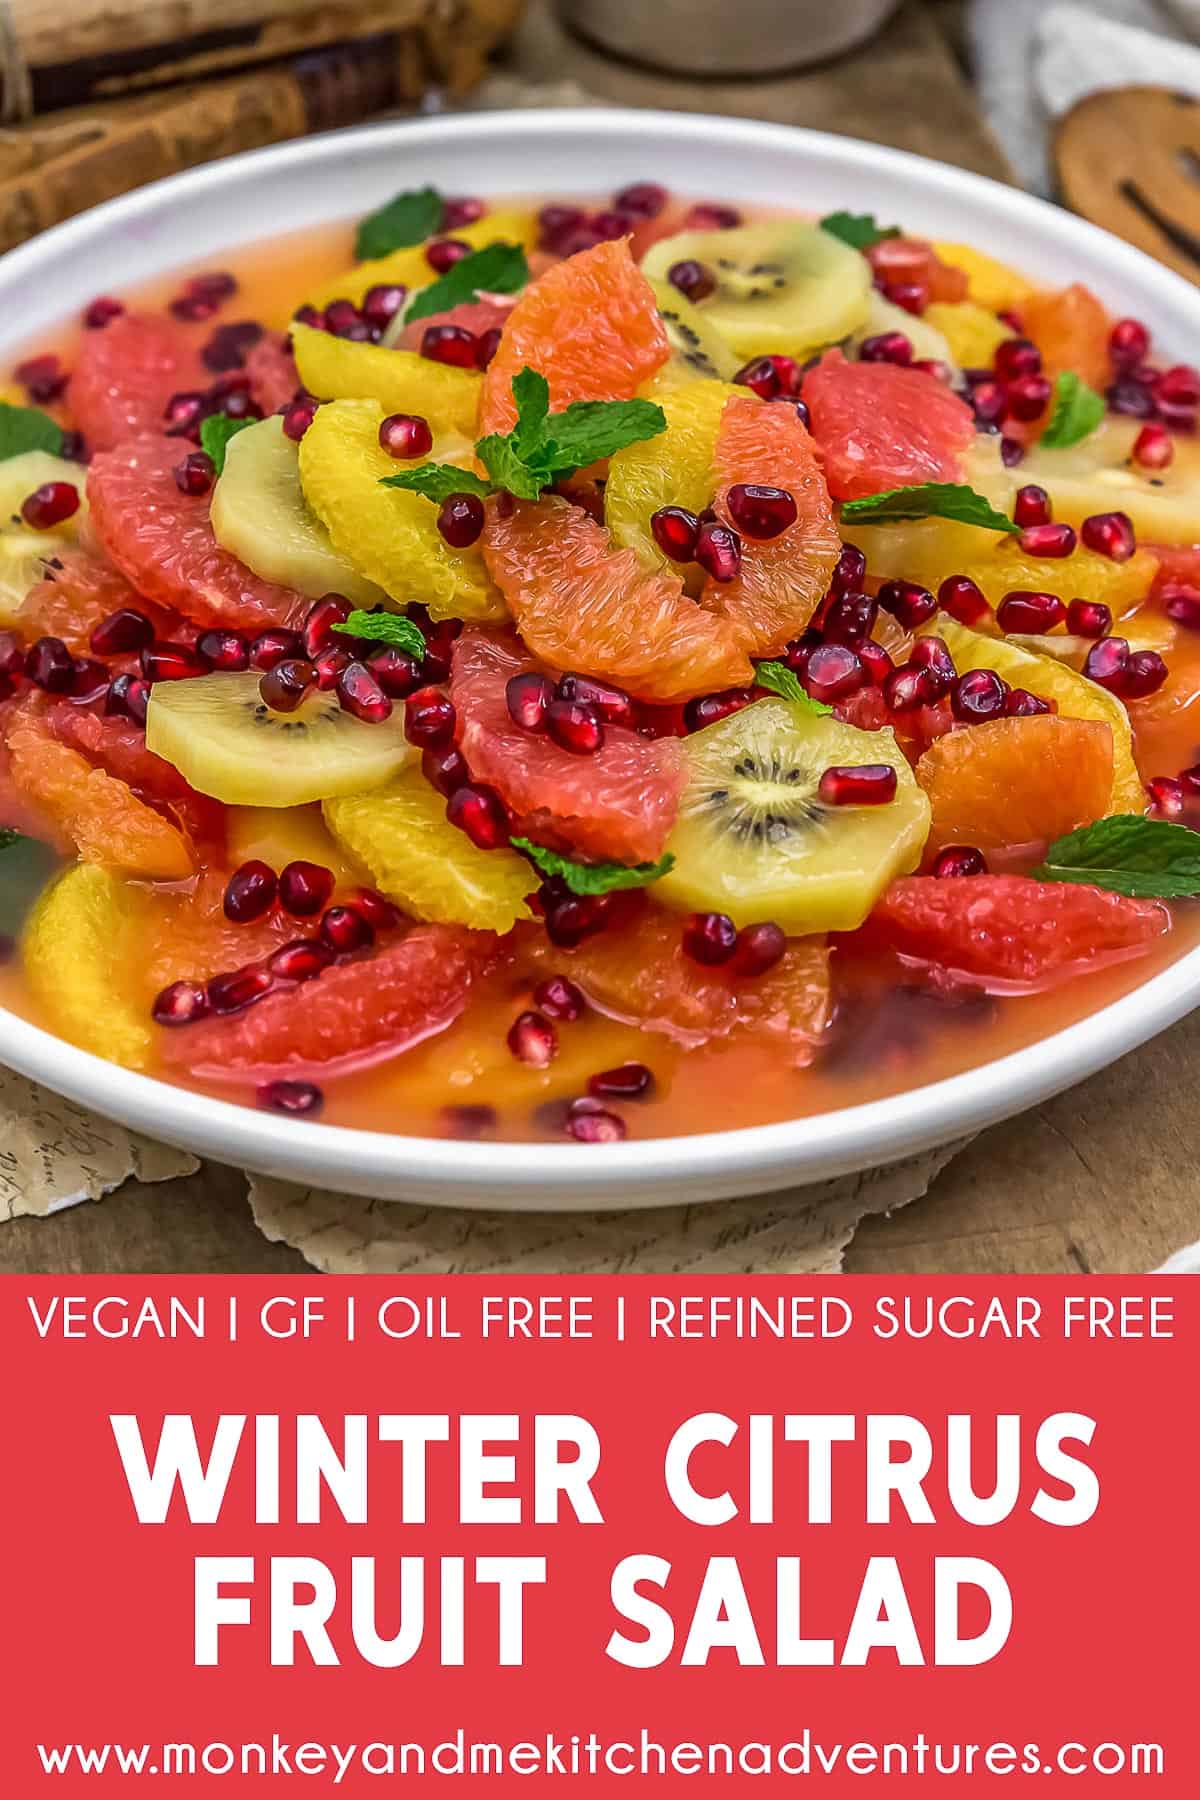 Winter Citrus Fruit Salad with Text Description